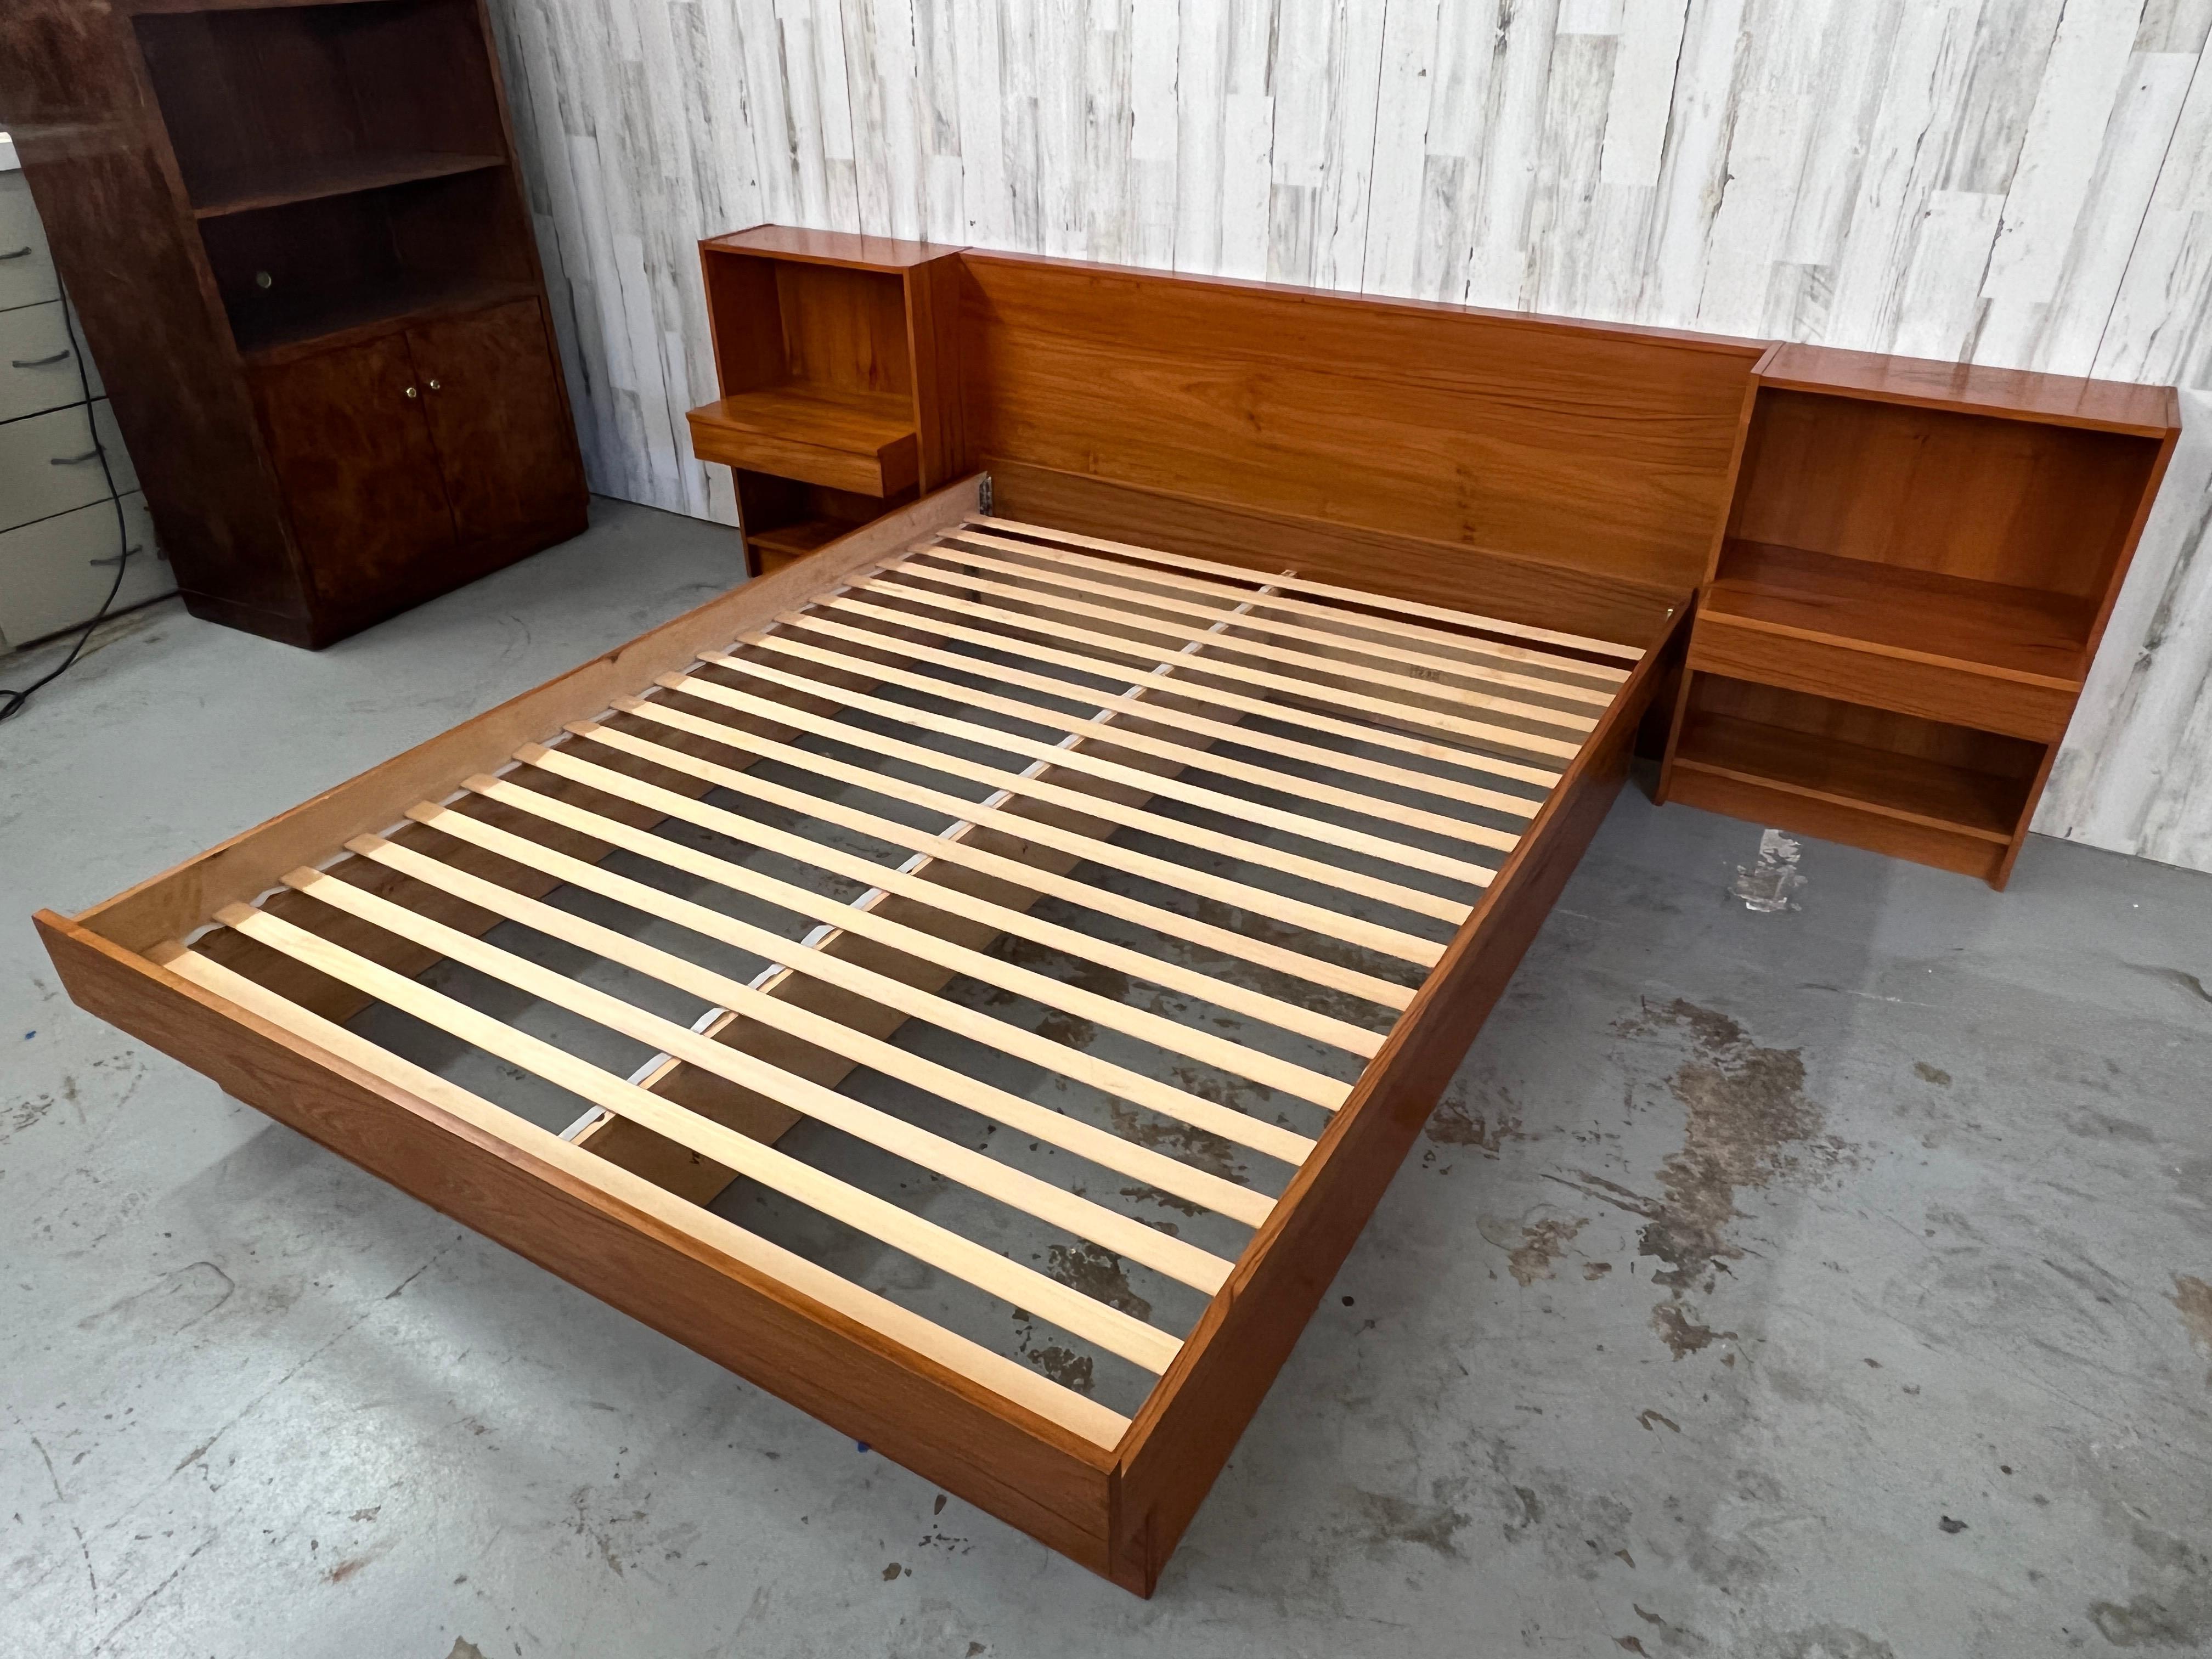 Wood Danish Modern Platform Bed & Nightstands- Queen Size